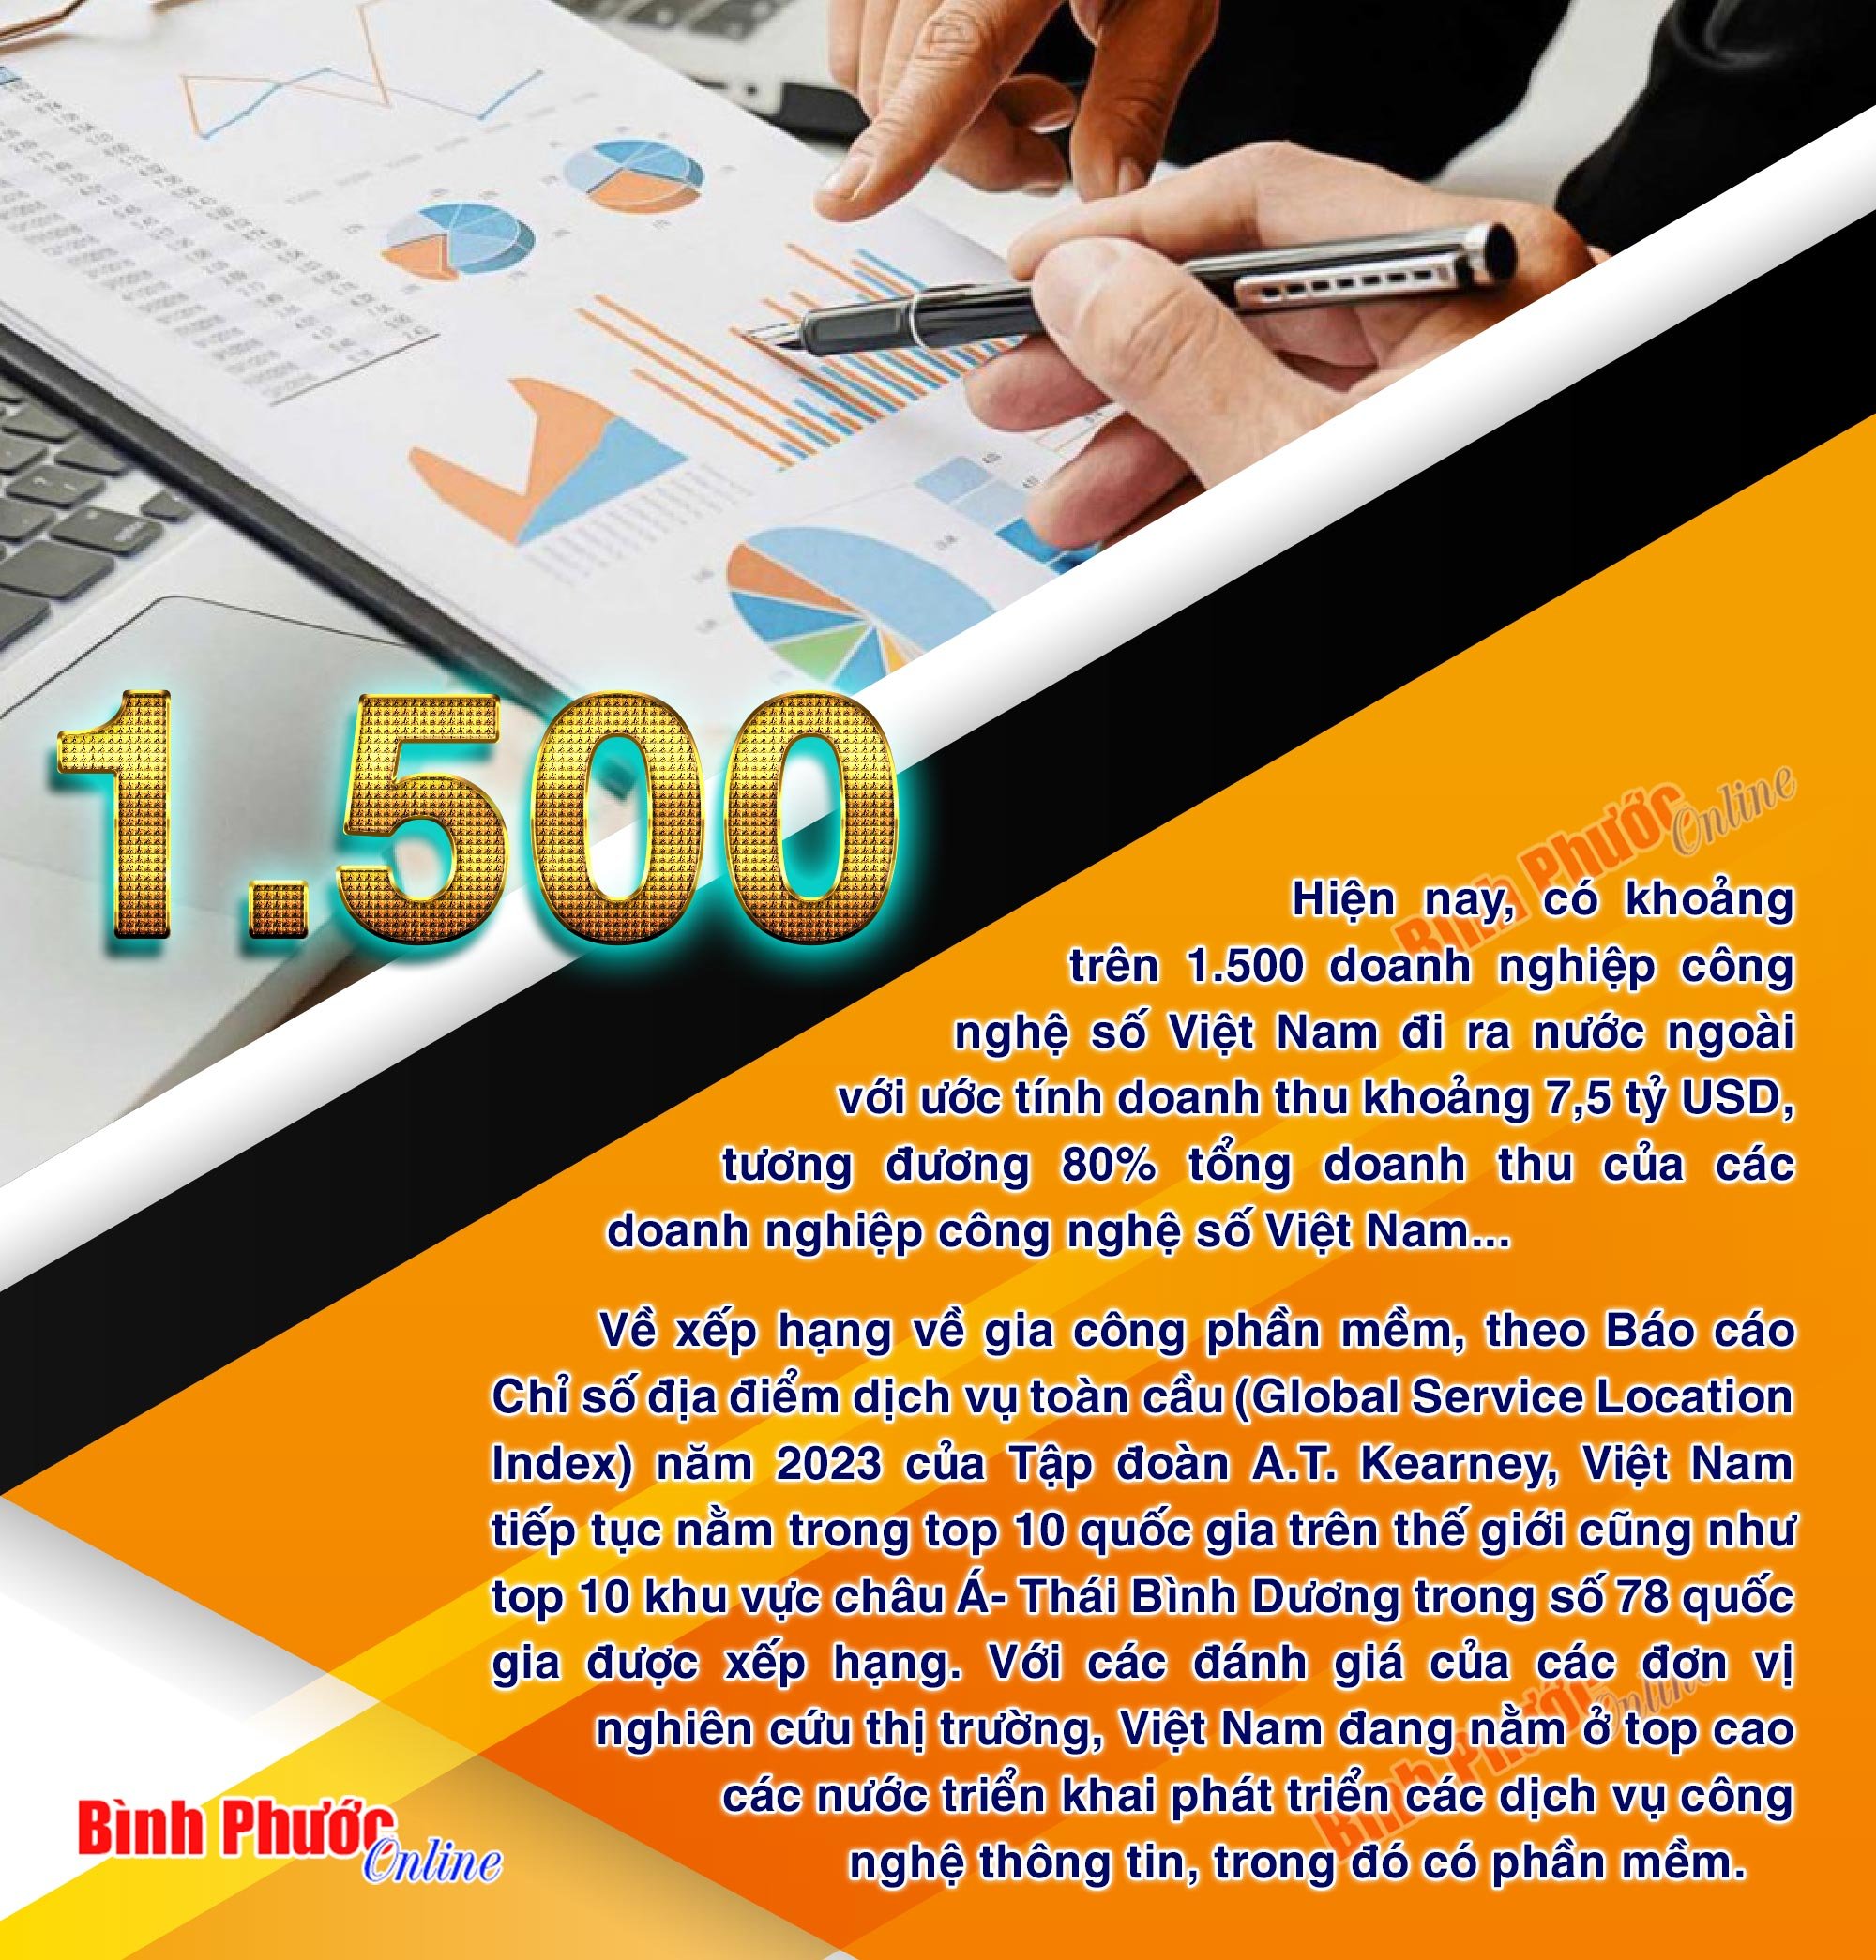 1.500 doanh nghiệp công nghệ số Việt Nam thu 7,5 tỷ USD từ thị trường nước ngoài